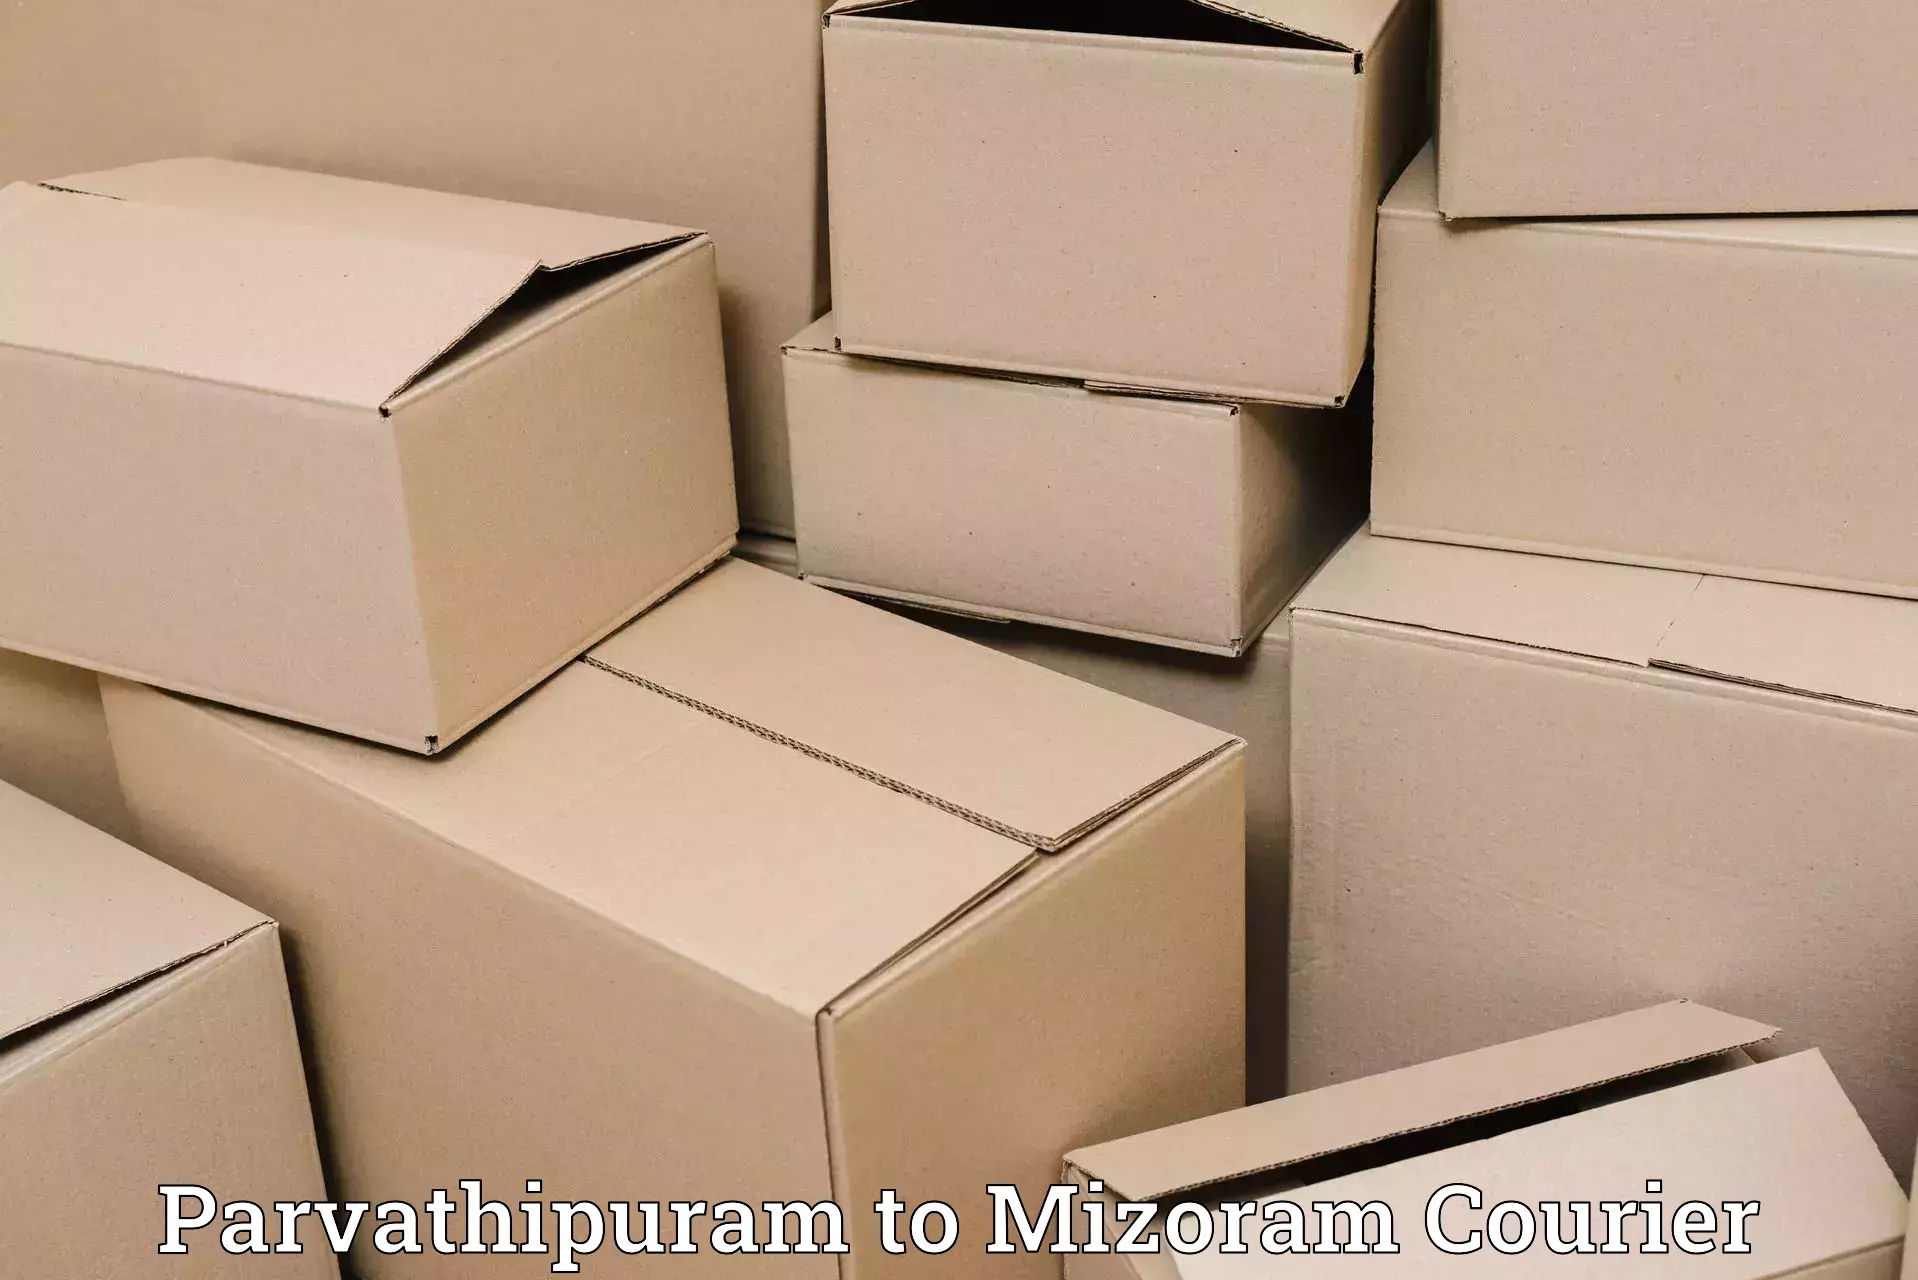 Ground shipping Parvathipuram to Darlawn